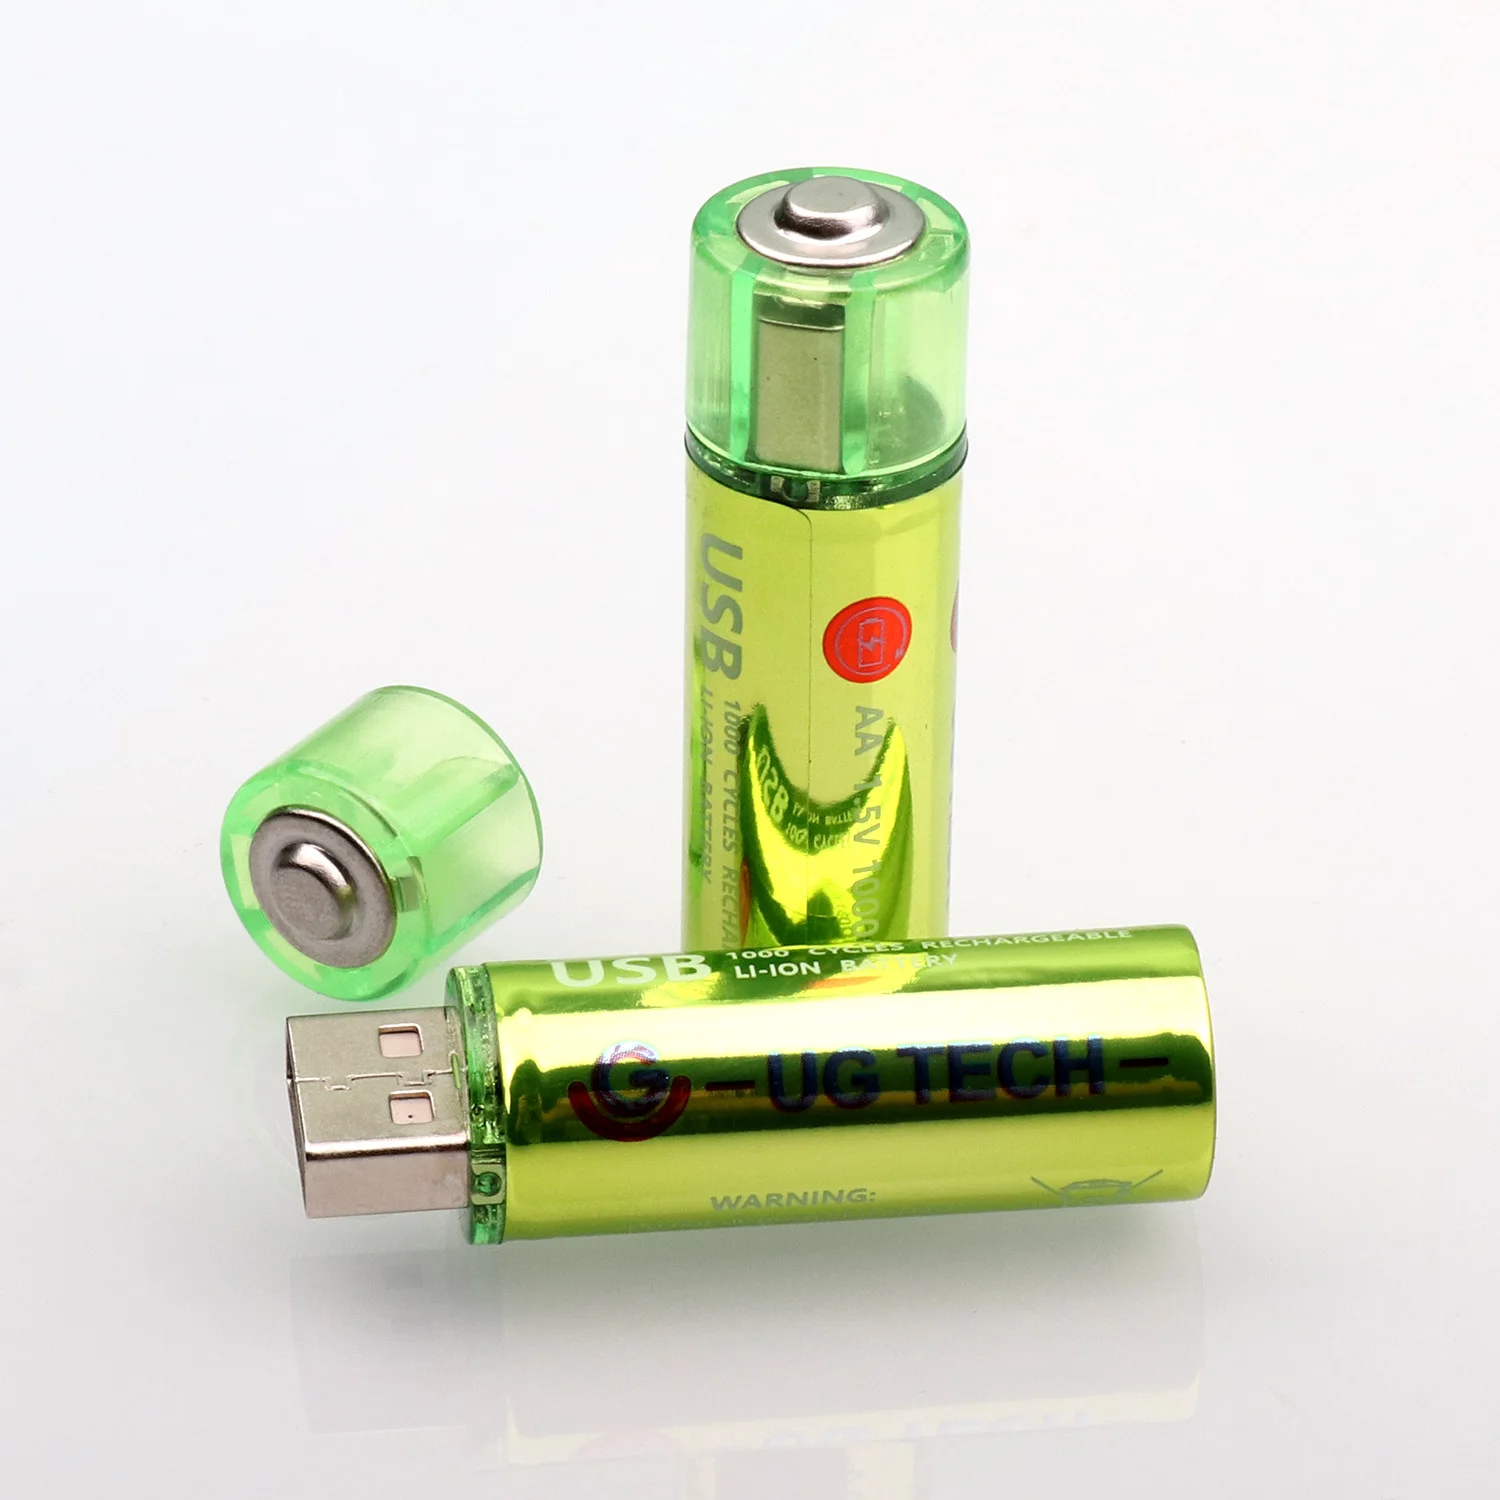 1000 mAh 1,5 V NiMH AA перезаряжаемый литий-ионный аккумулятор со встроенным портом Micro USB 2 способа зарядки 2 шт